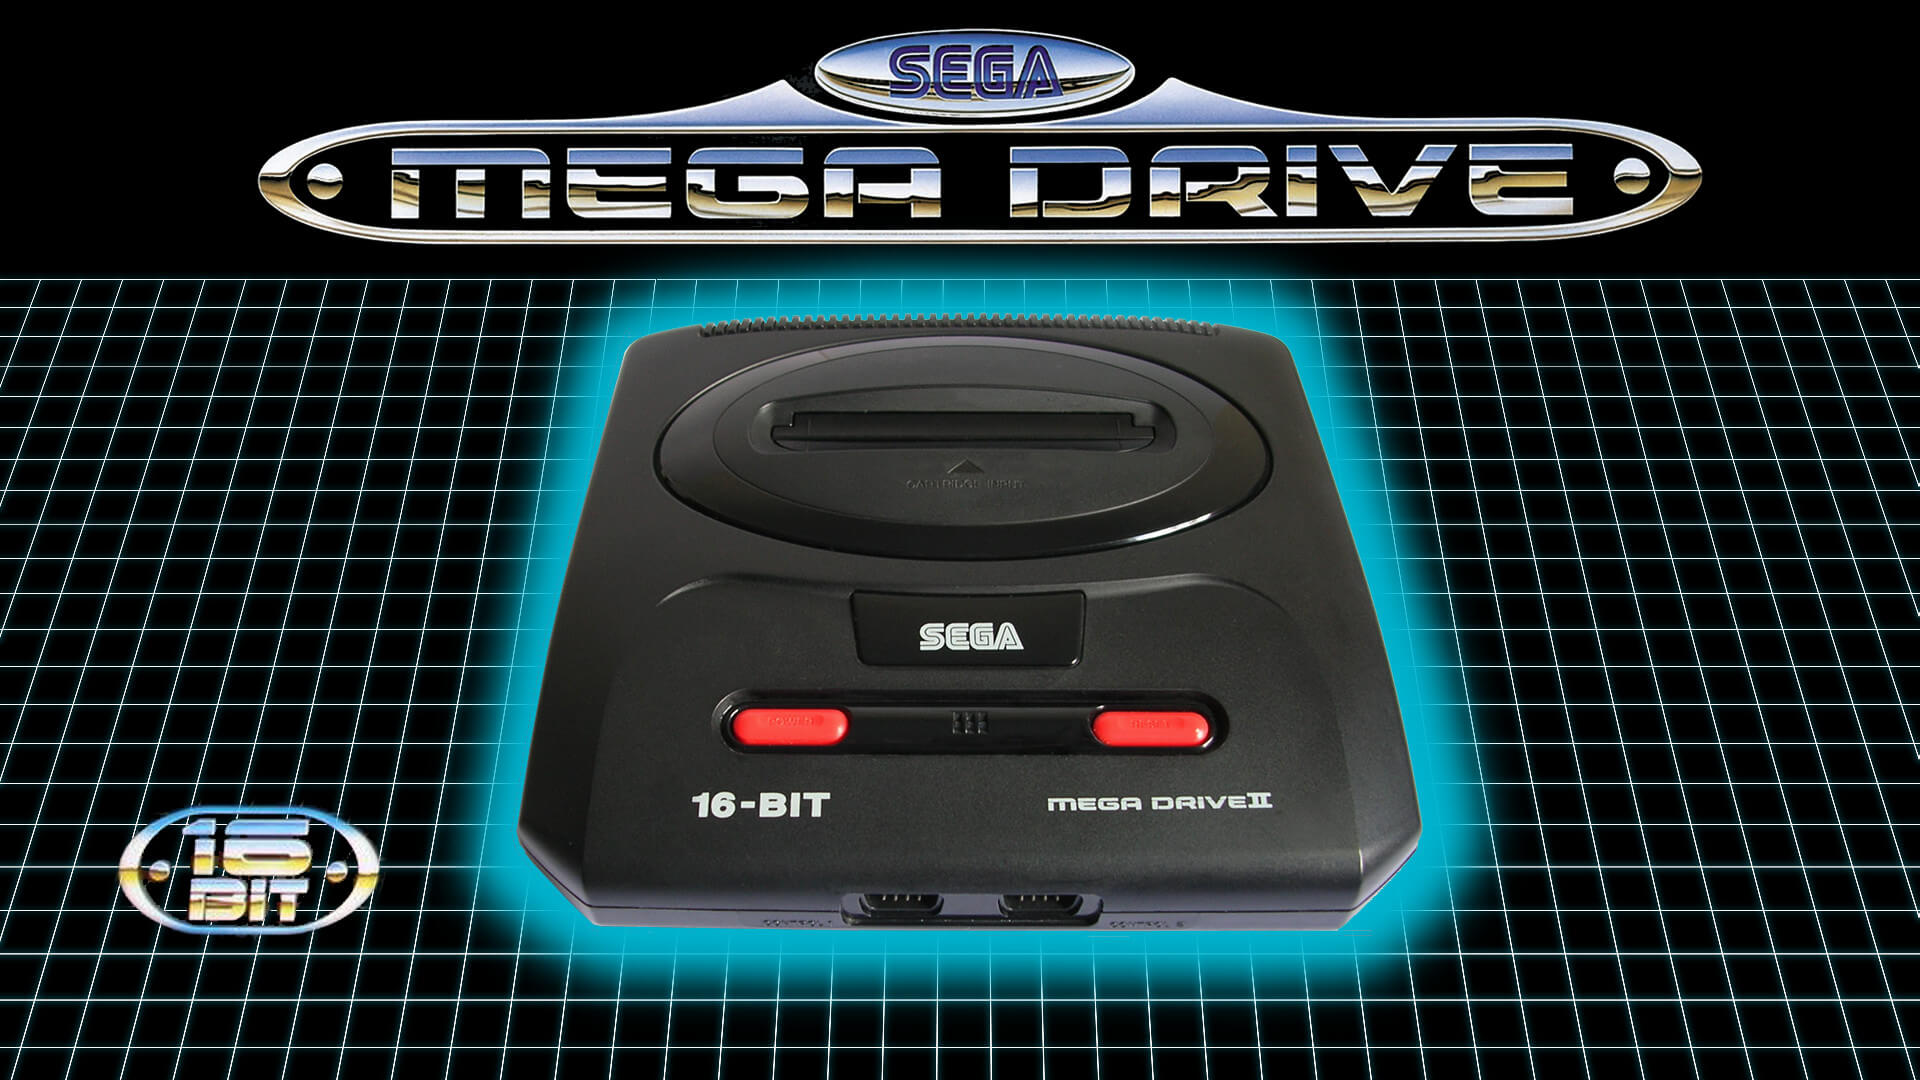 Mega Drive Classics